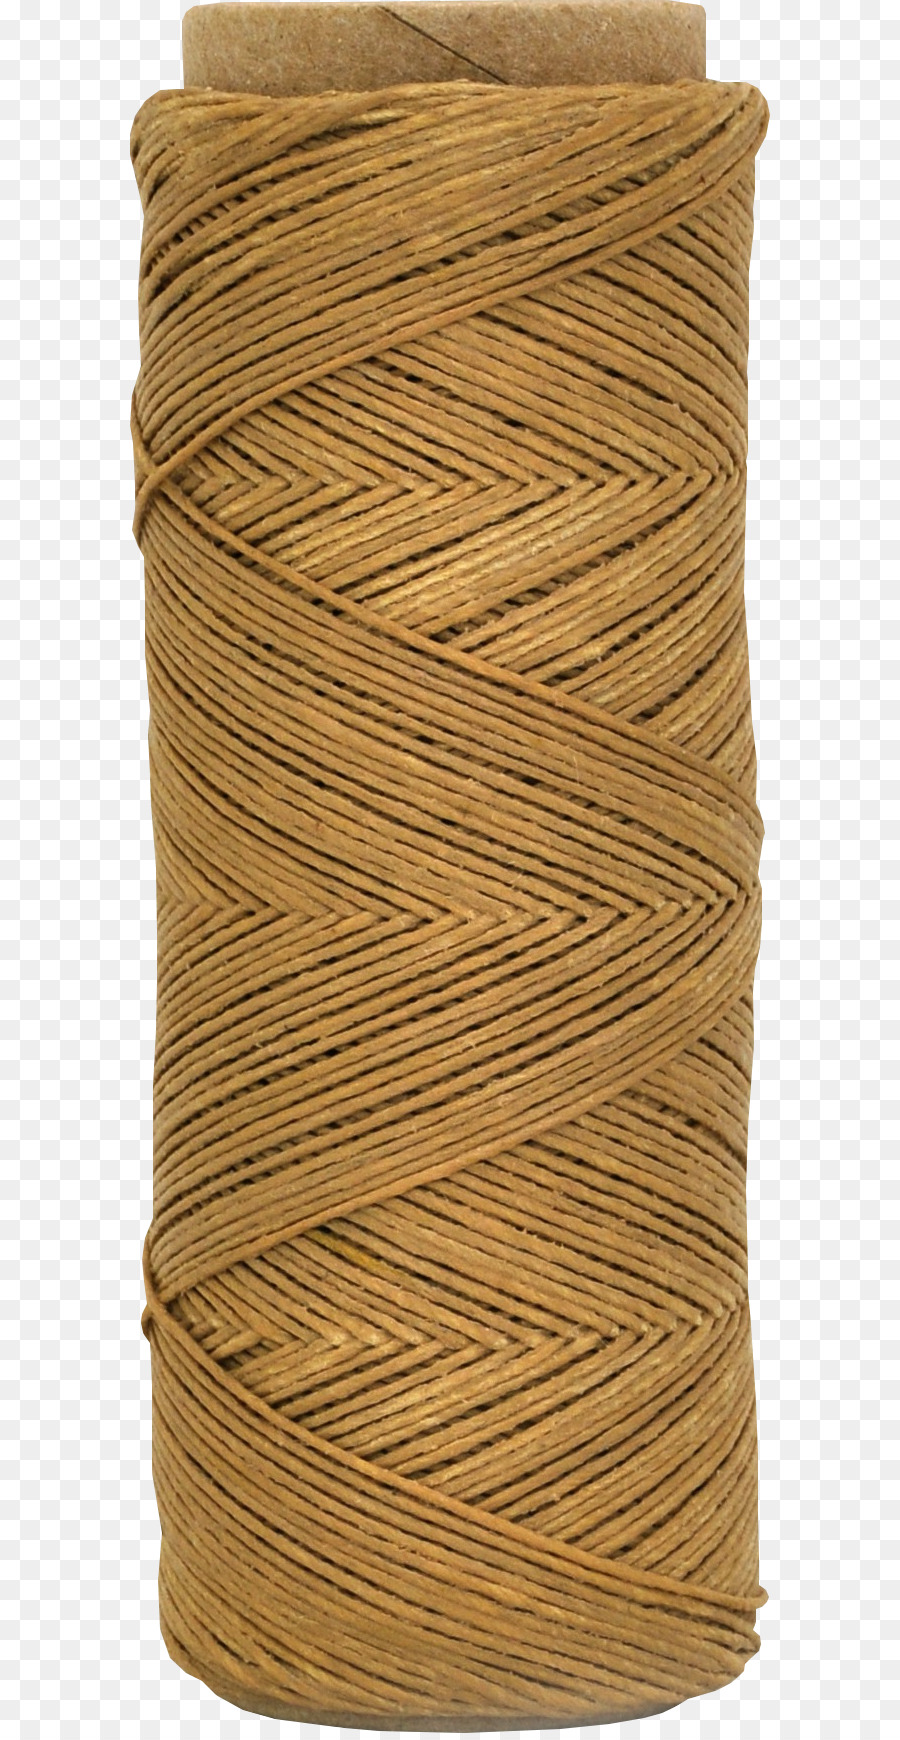 Draht-Seil Wire rope Clip-art - Seil